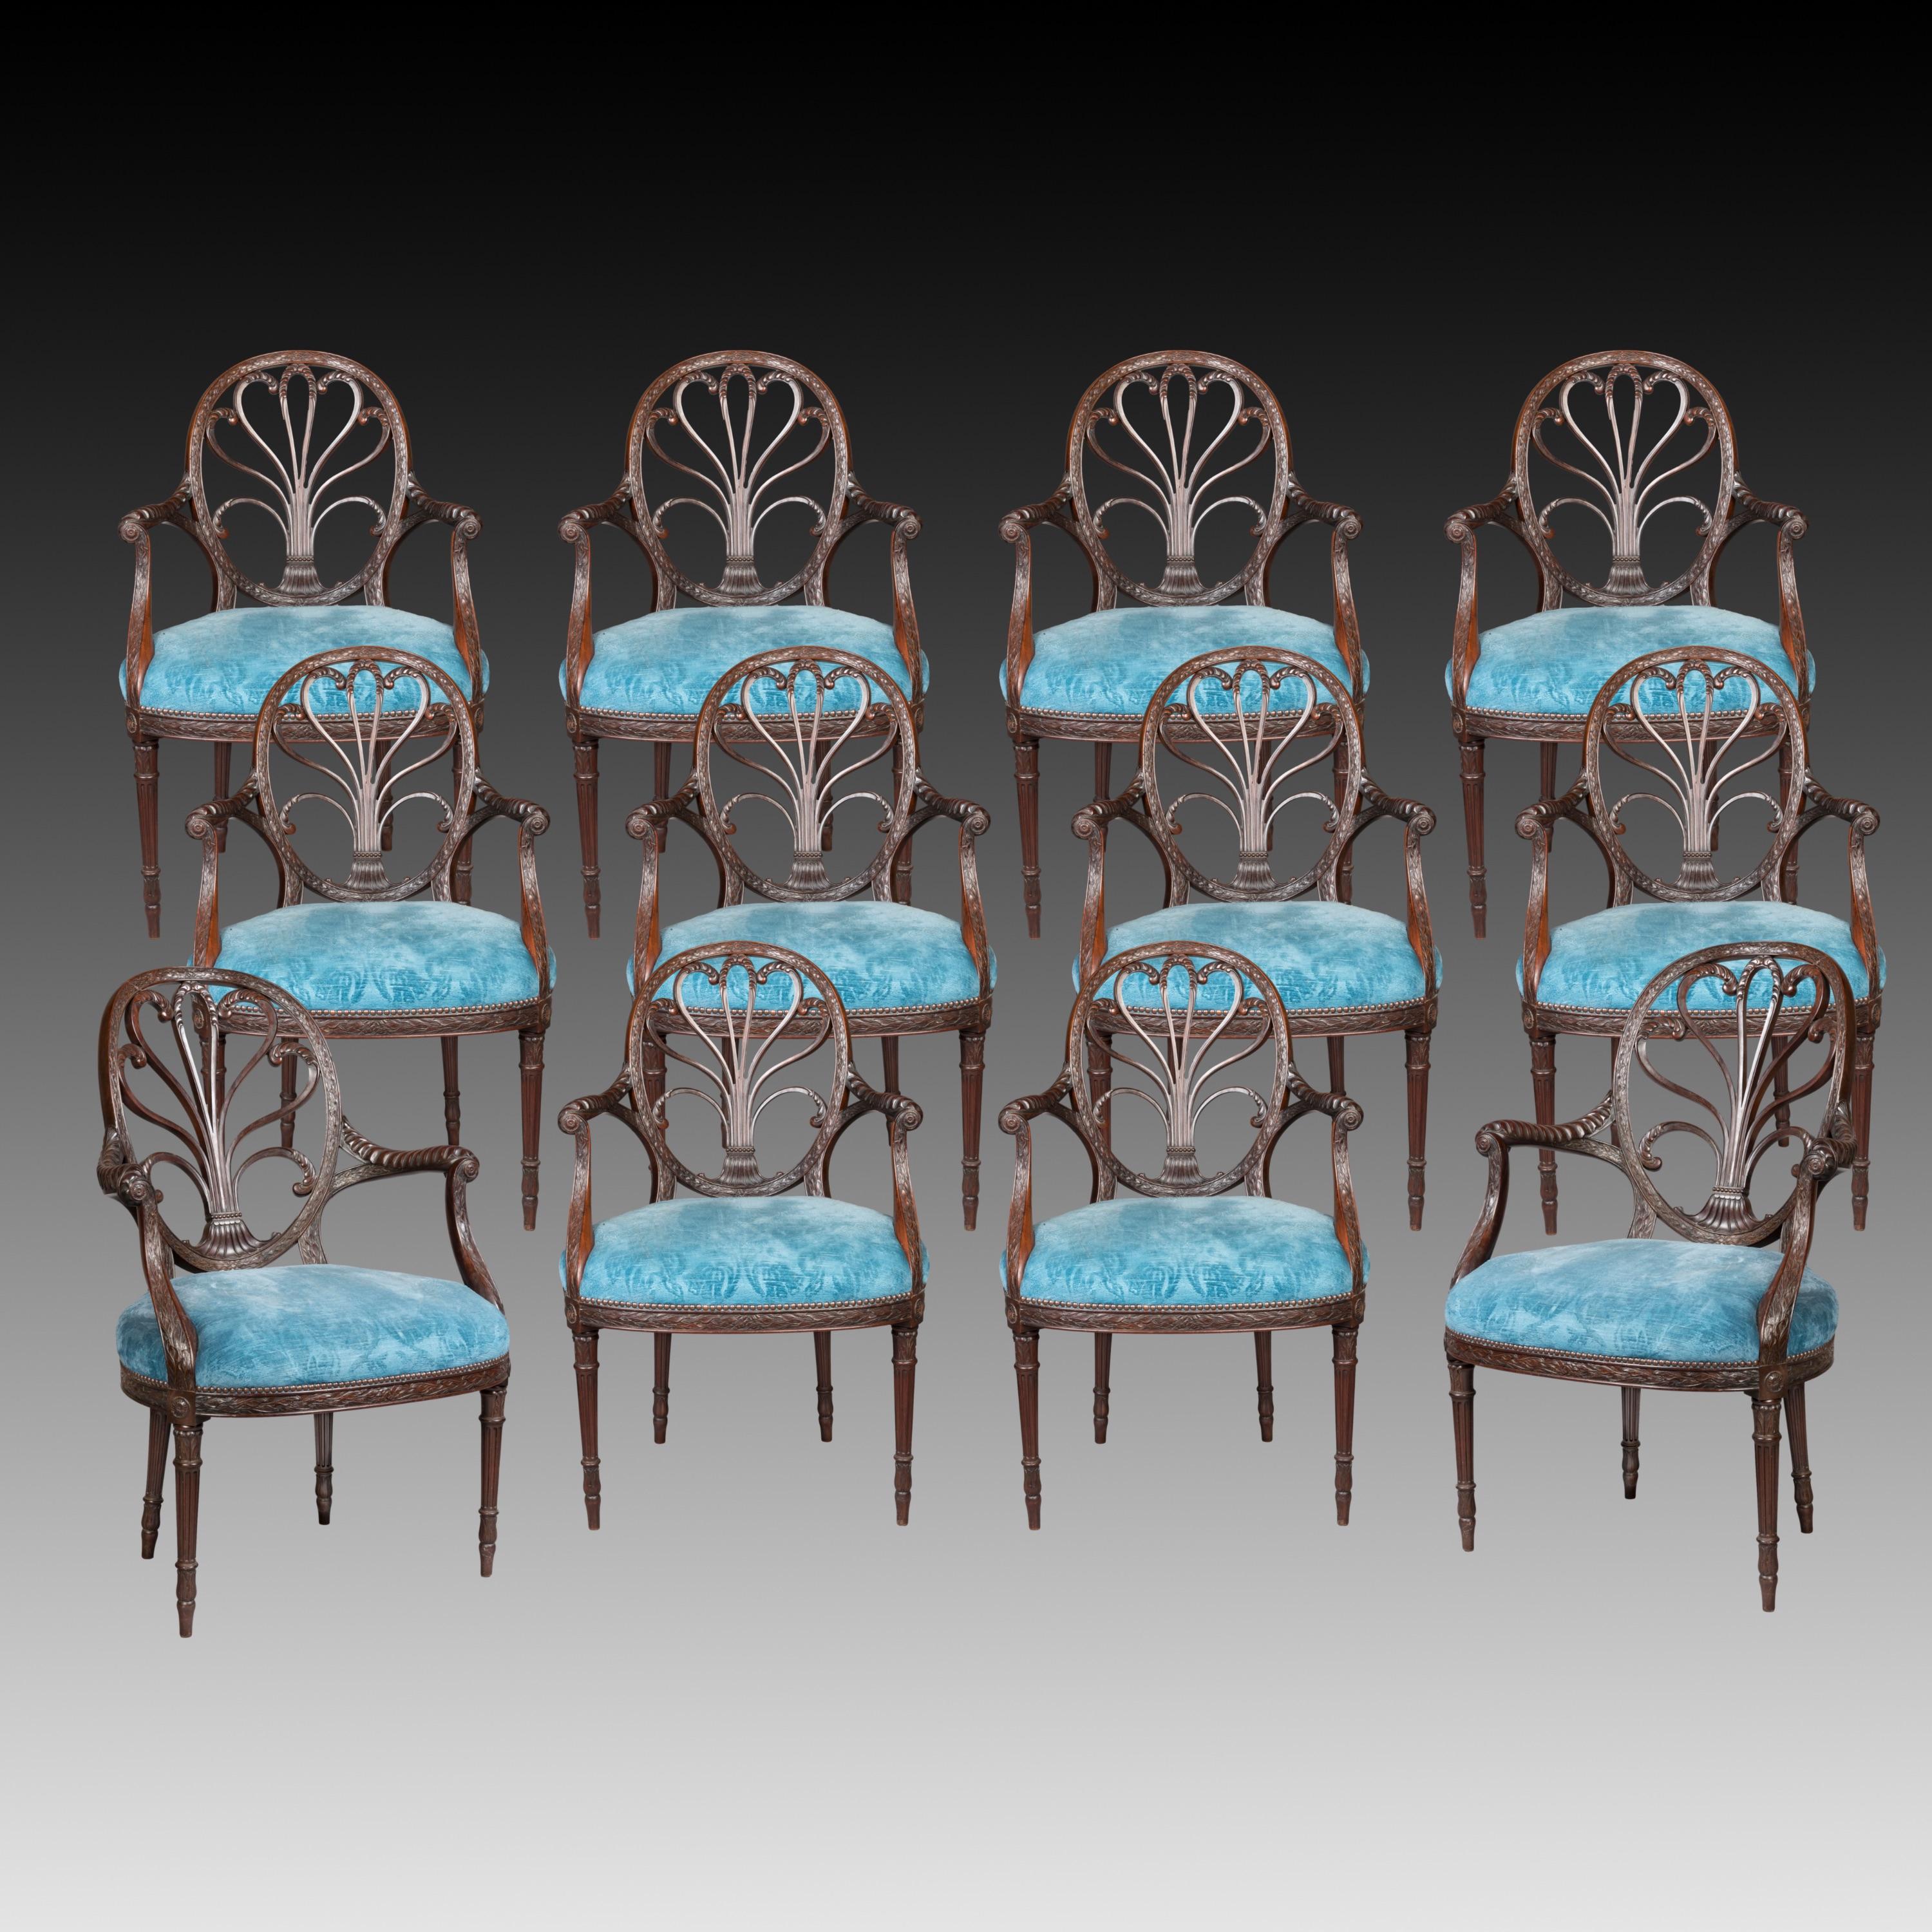 Rare ensemble aux proportions admirablement dessinées, composé de deux grands fauteuils et de dix fauteuils plus petits, tous sculptés dans l'acajou, reposant sur des pieds avant tournés en anneau, fuselés et cannelés, surmontés de bandes de